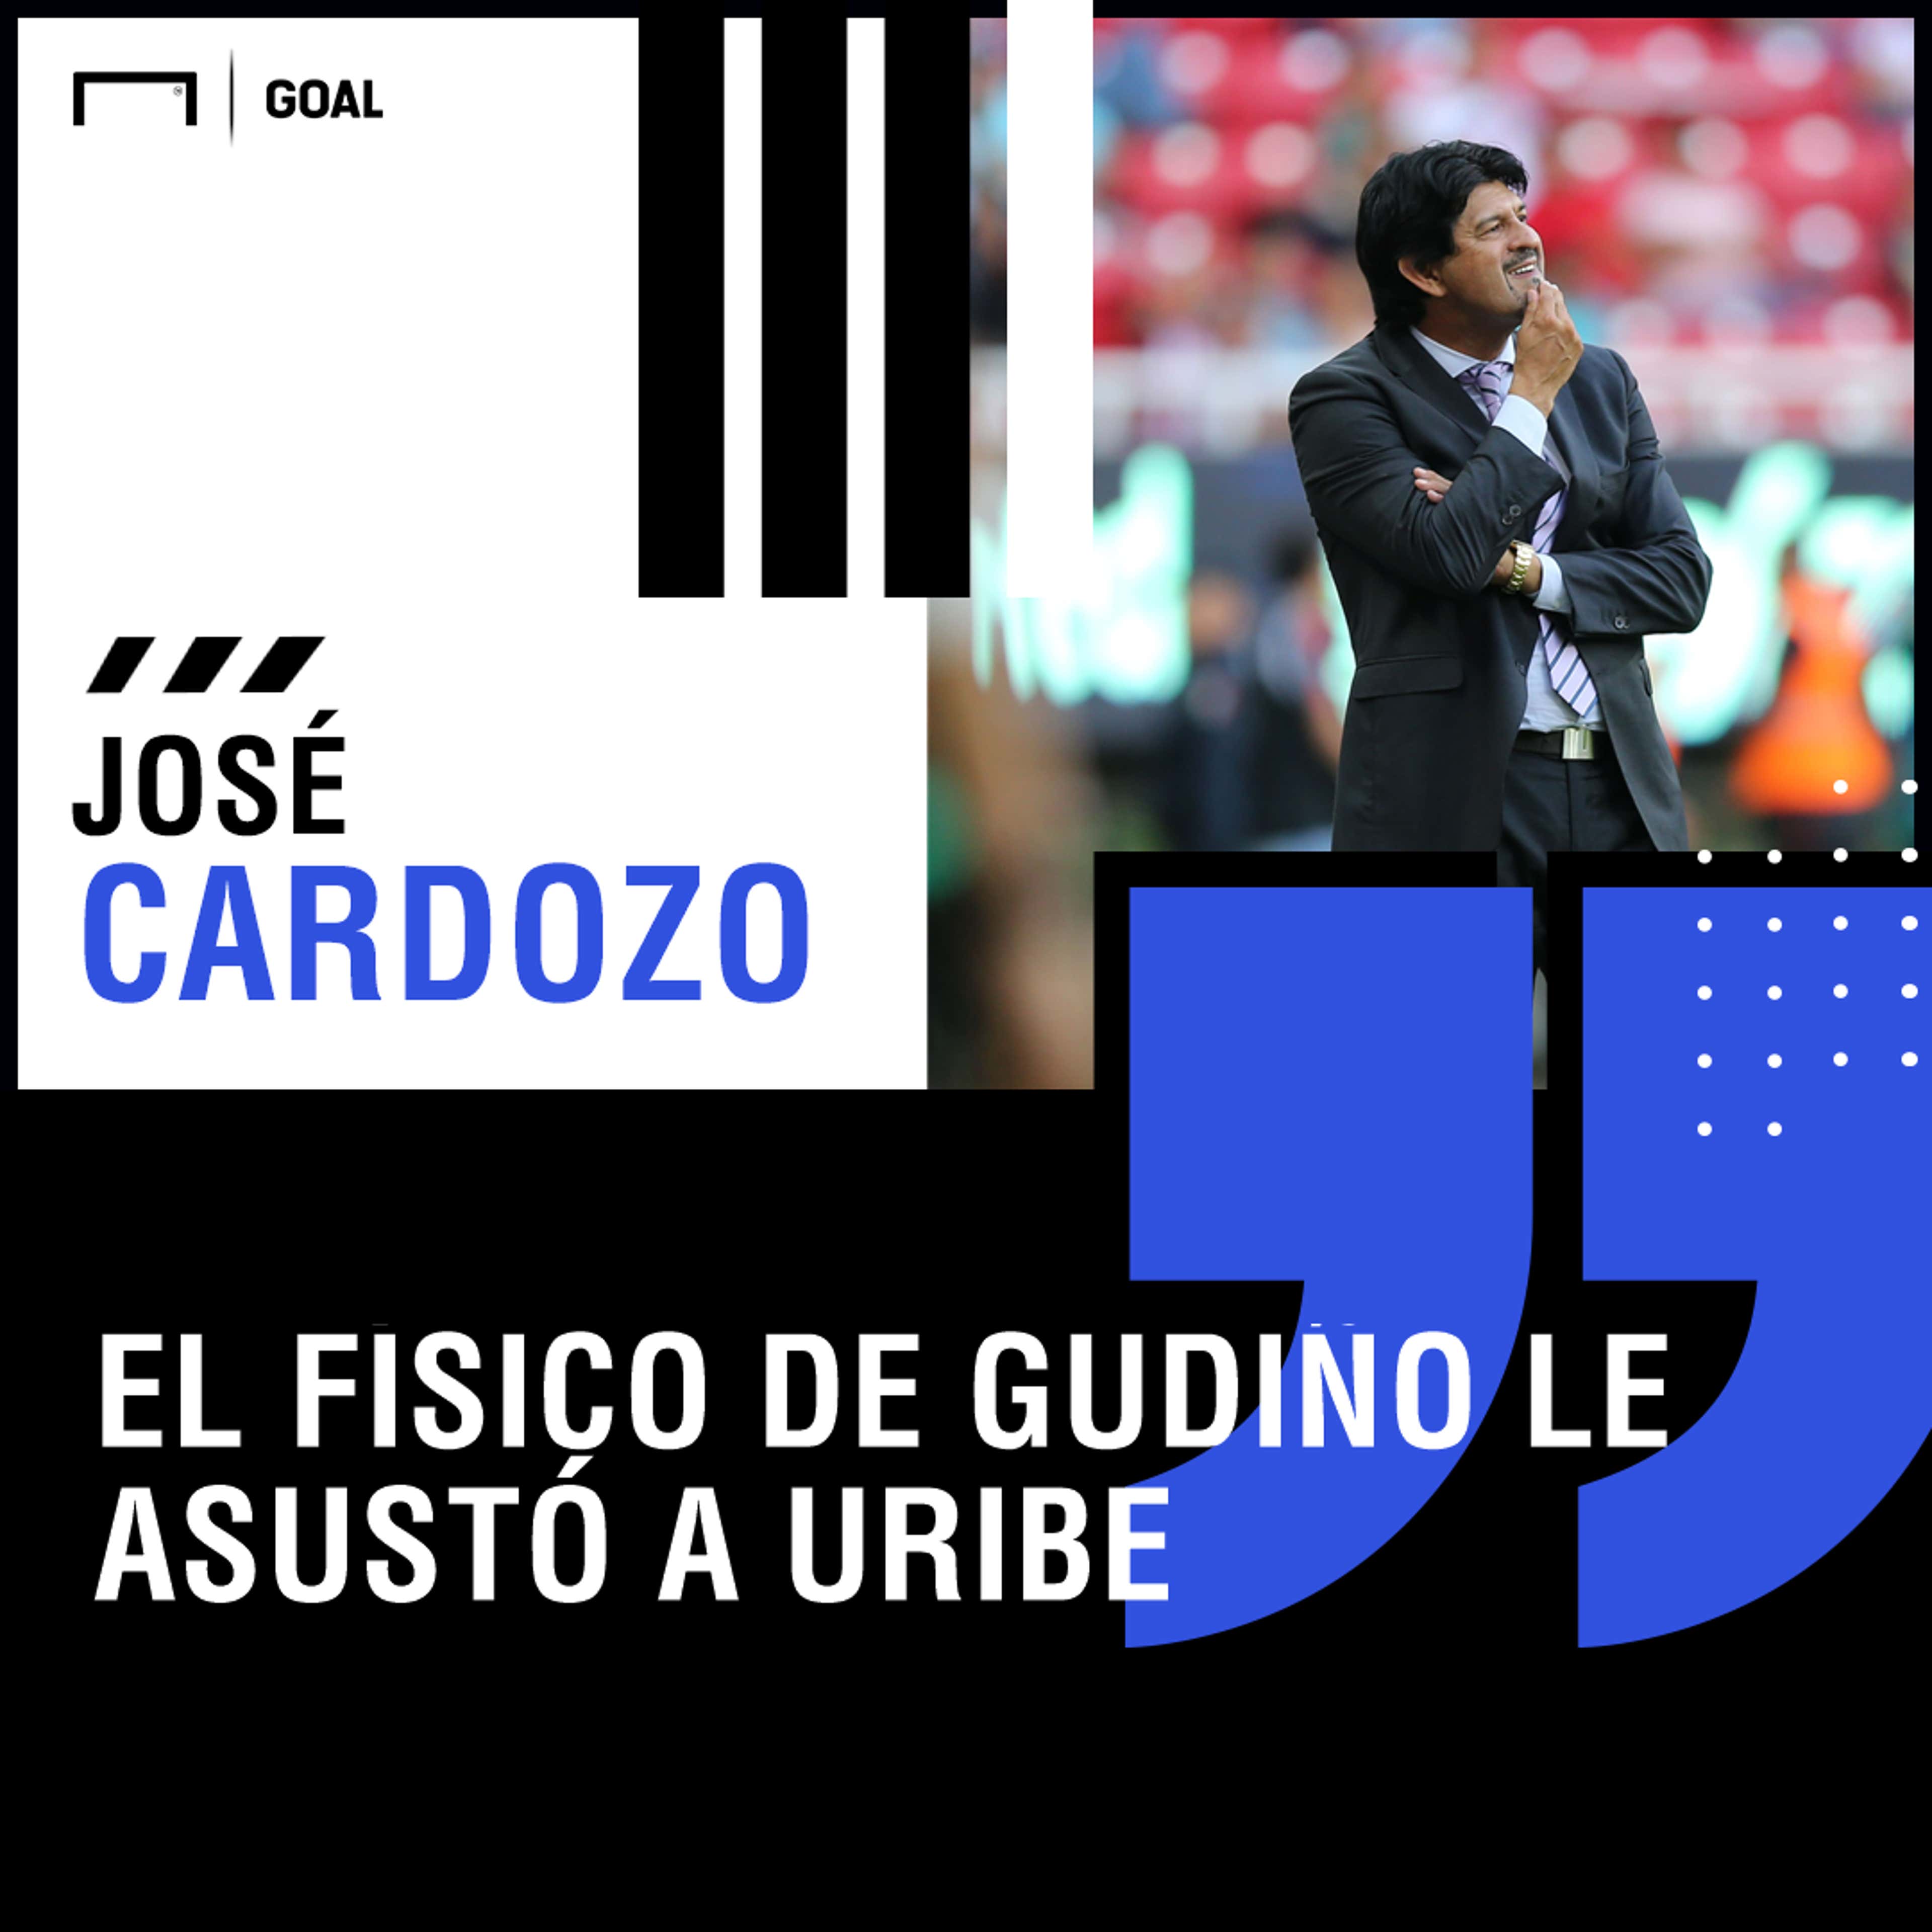 José Cardozo quote